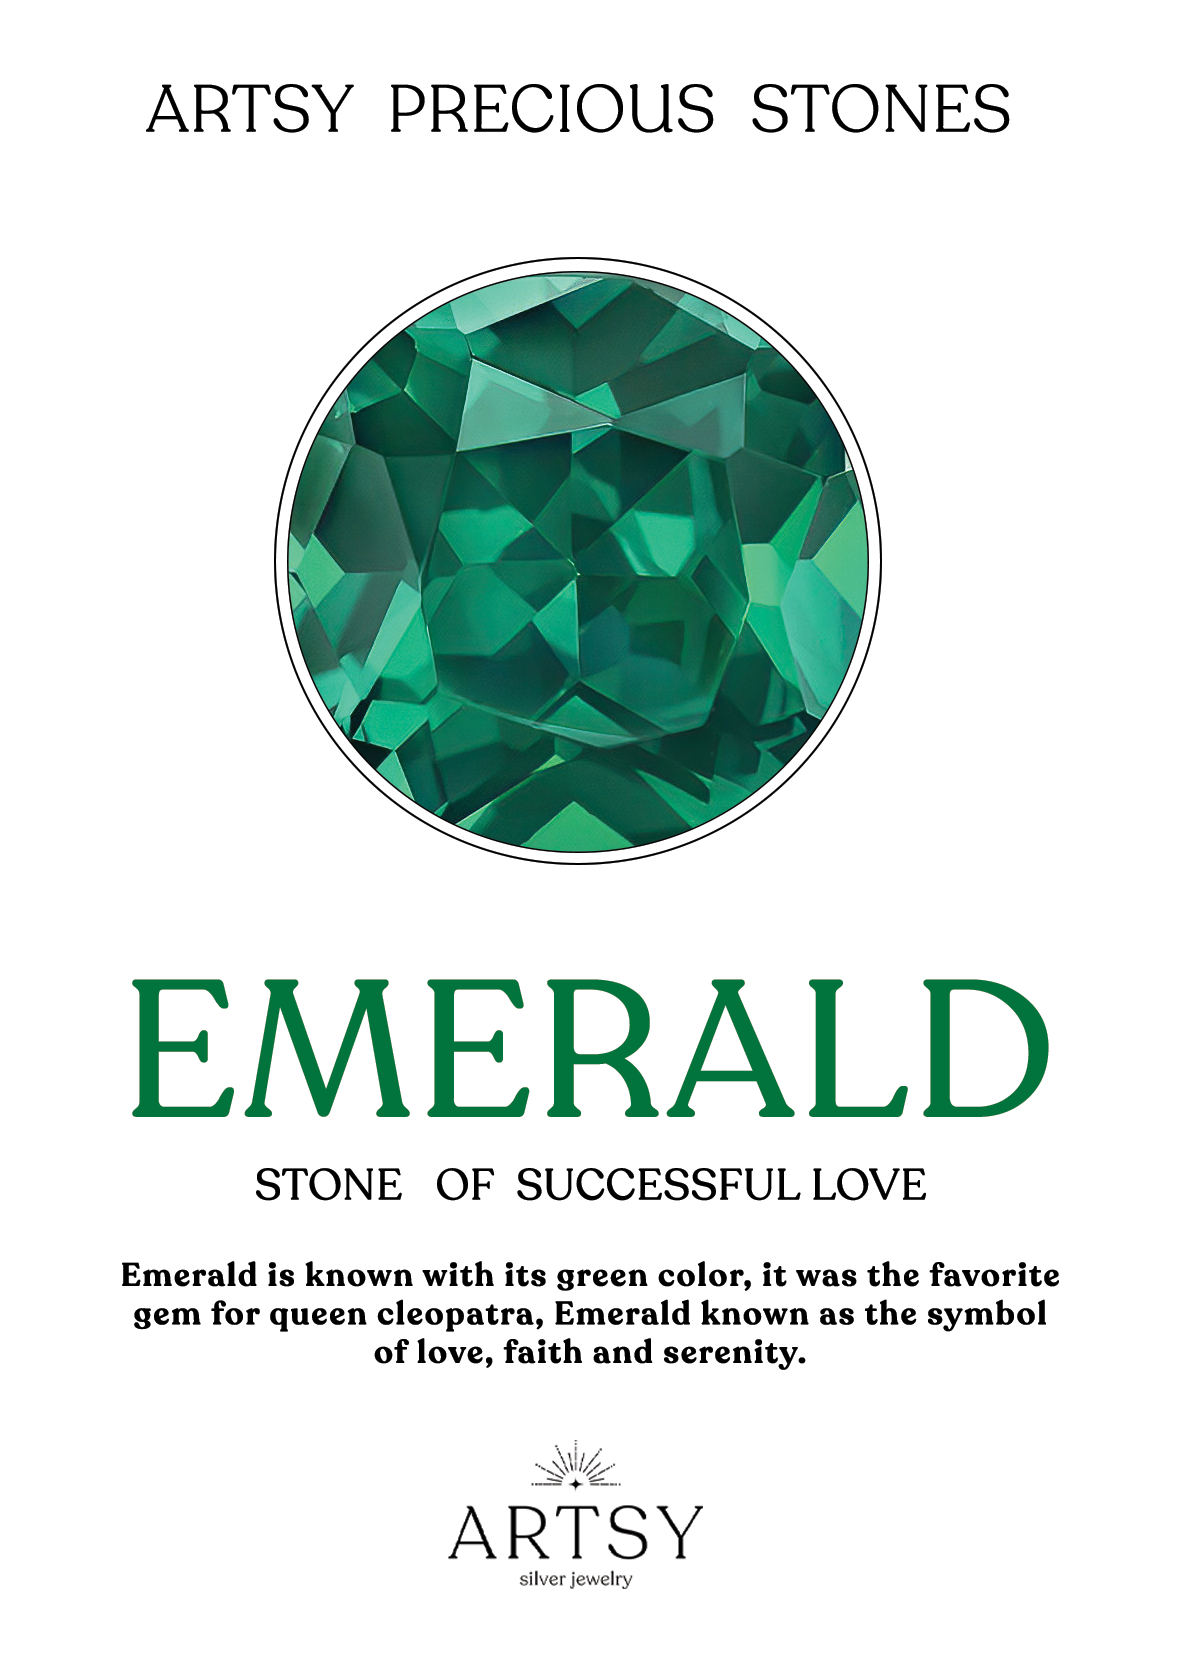 Emerald Heart Cut Tennis Necklace